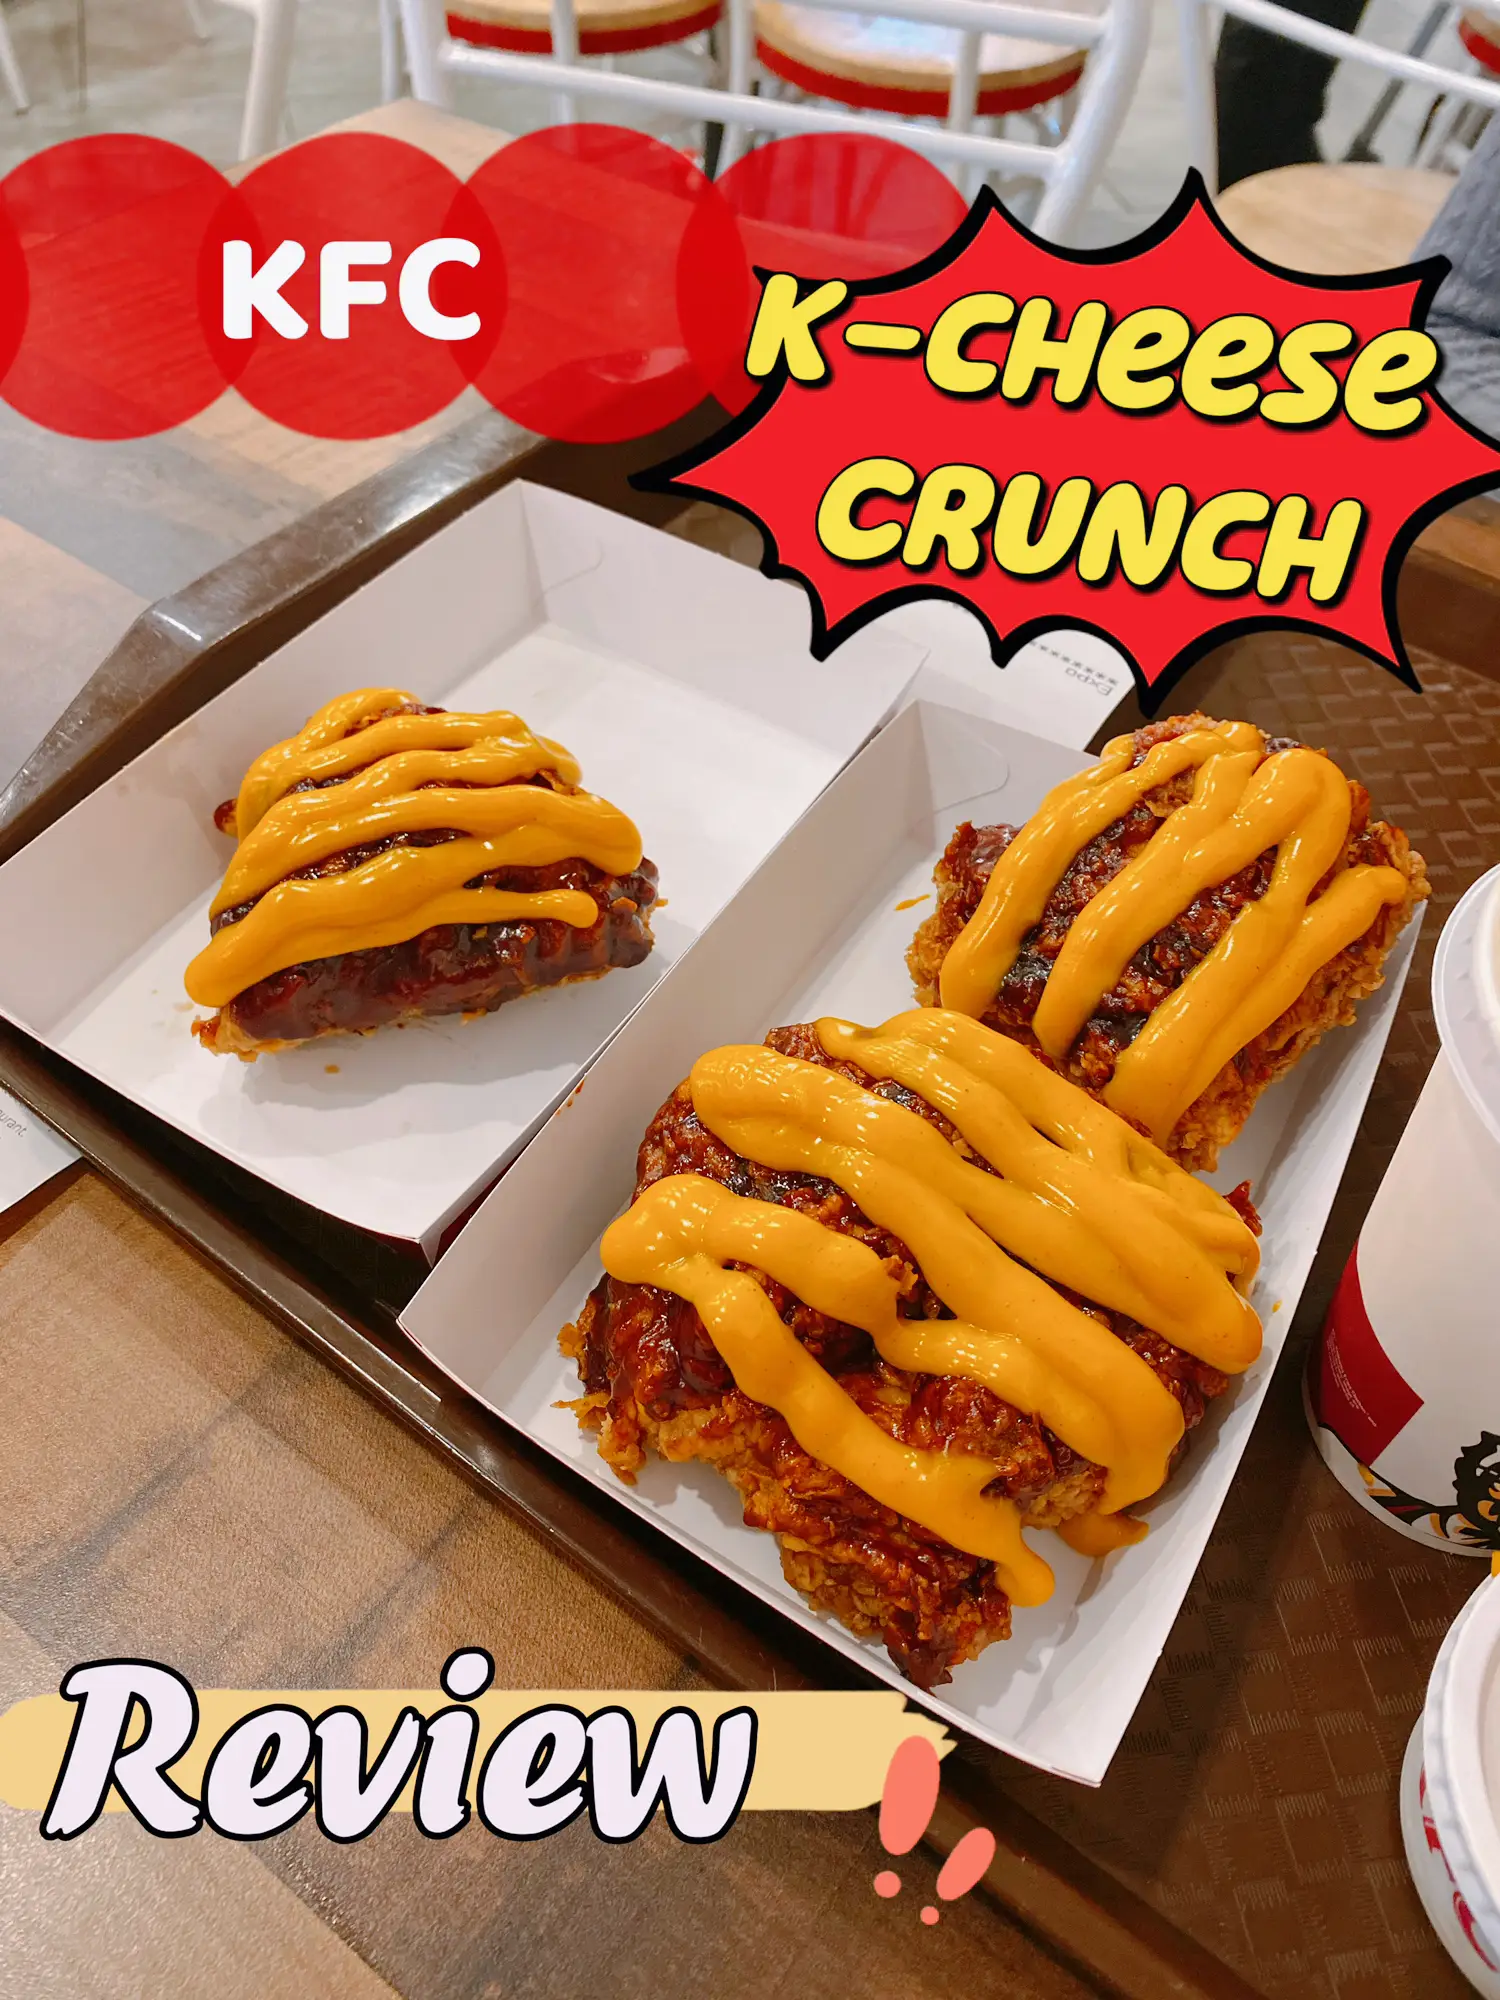 KFC Cup 'N Krunch Meal